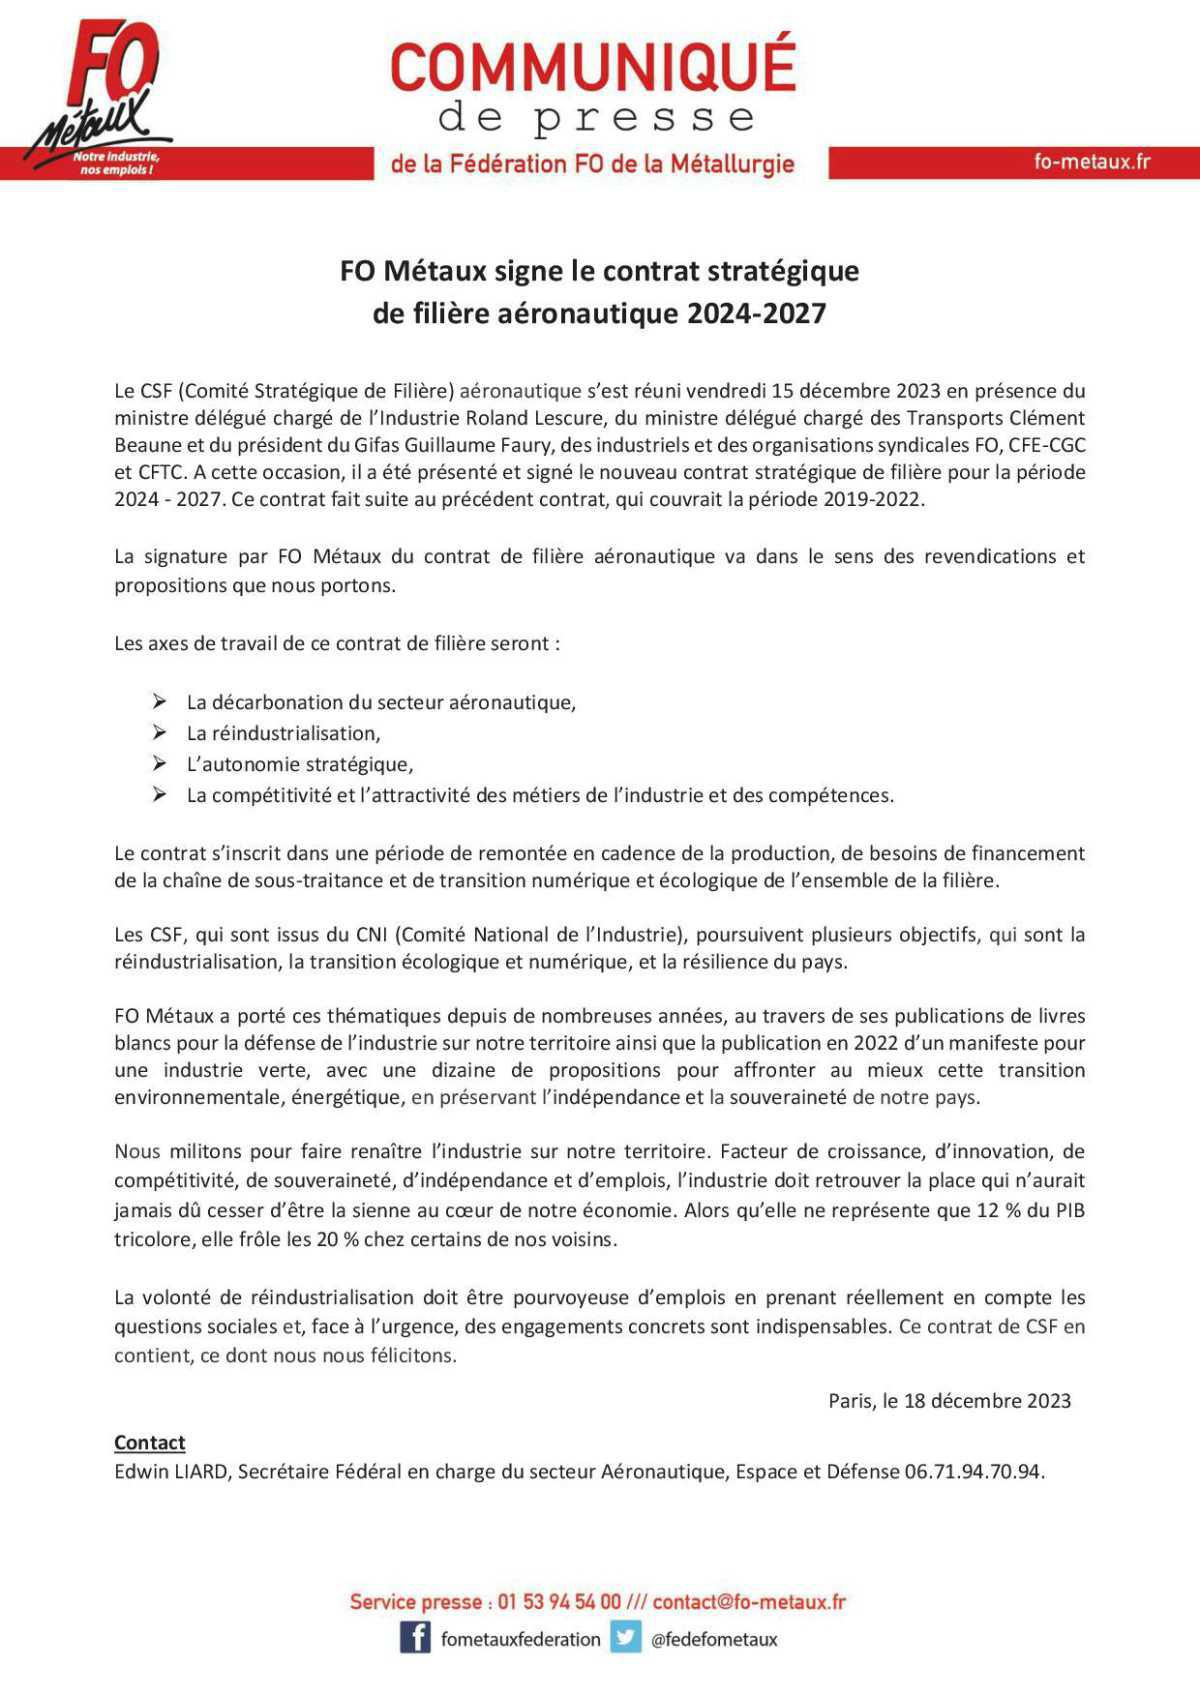 FO Métaux signe le contrat stratégique de filière aéronautique 2024-2027